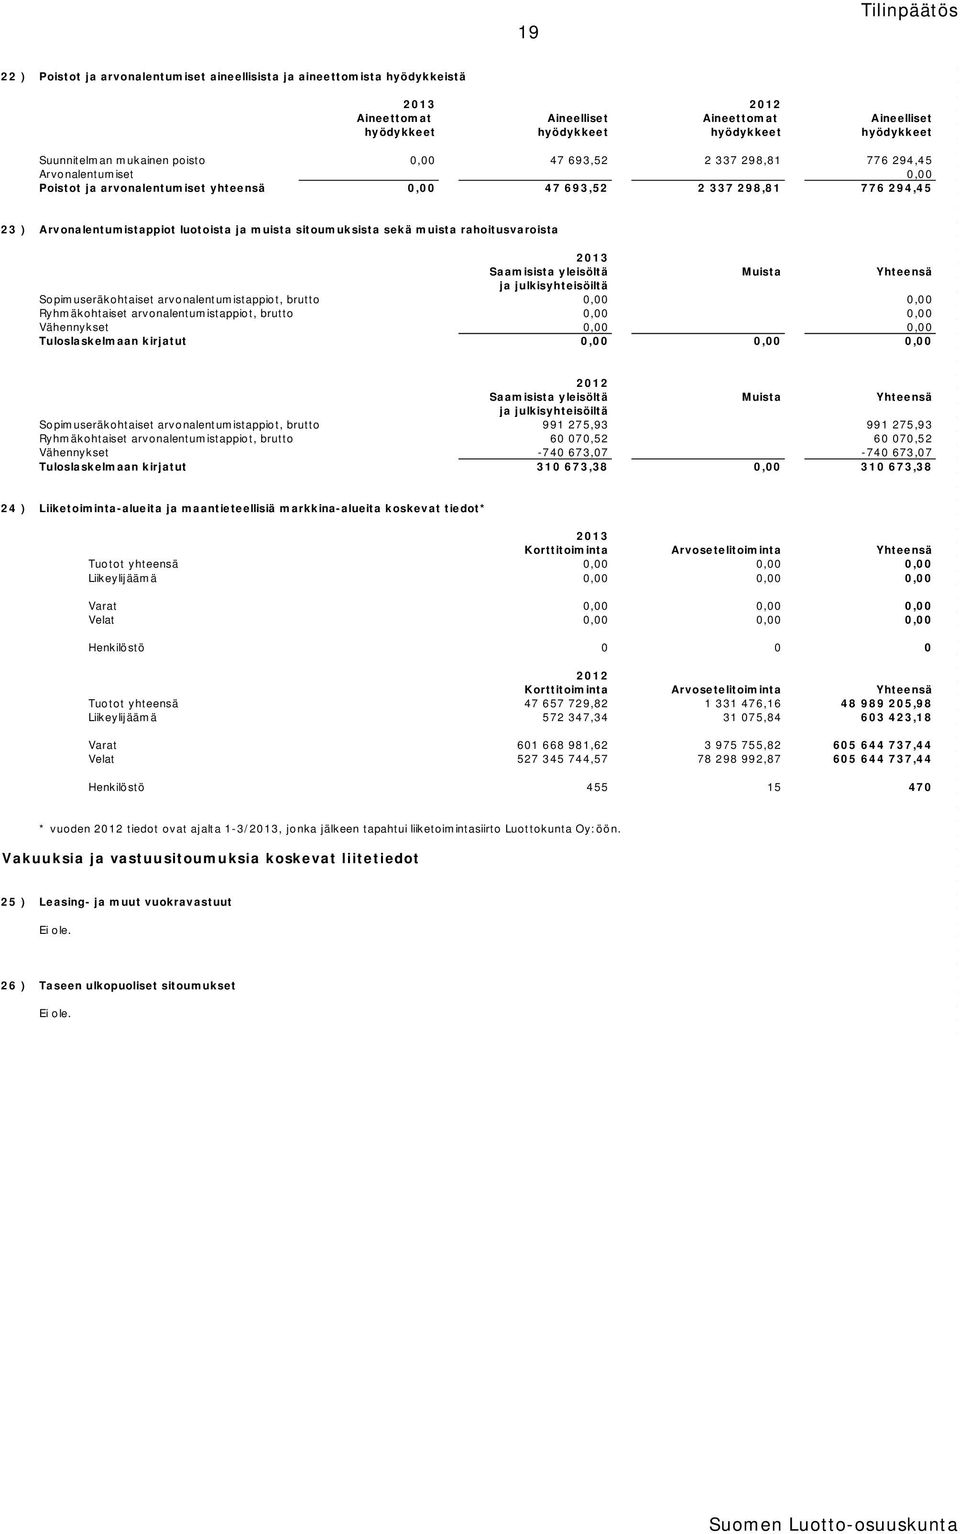 sitoumuksista sekä muista rahoitusvaroista 2013 Saamisista yleisöltä Muista Yhteensä ja julkisyhteisöiltä Sopimuseräkohtaiset arvonalentumistappiot, brutto 0,00 0,00 Ryhmäkohtaiset